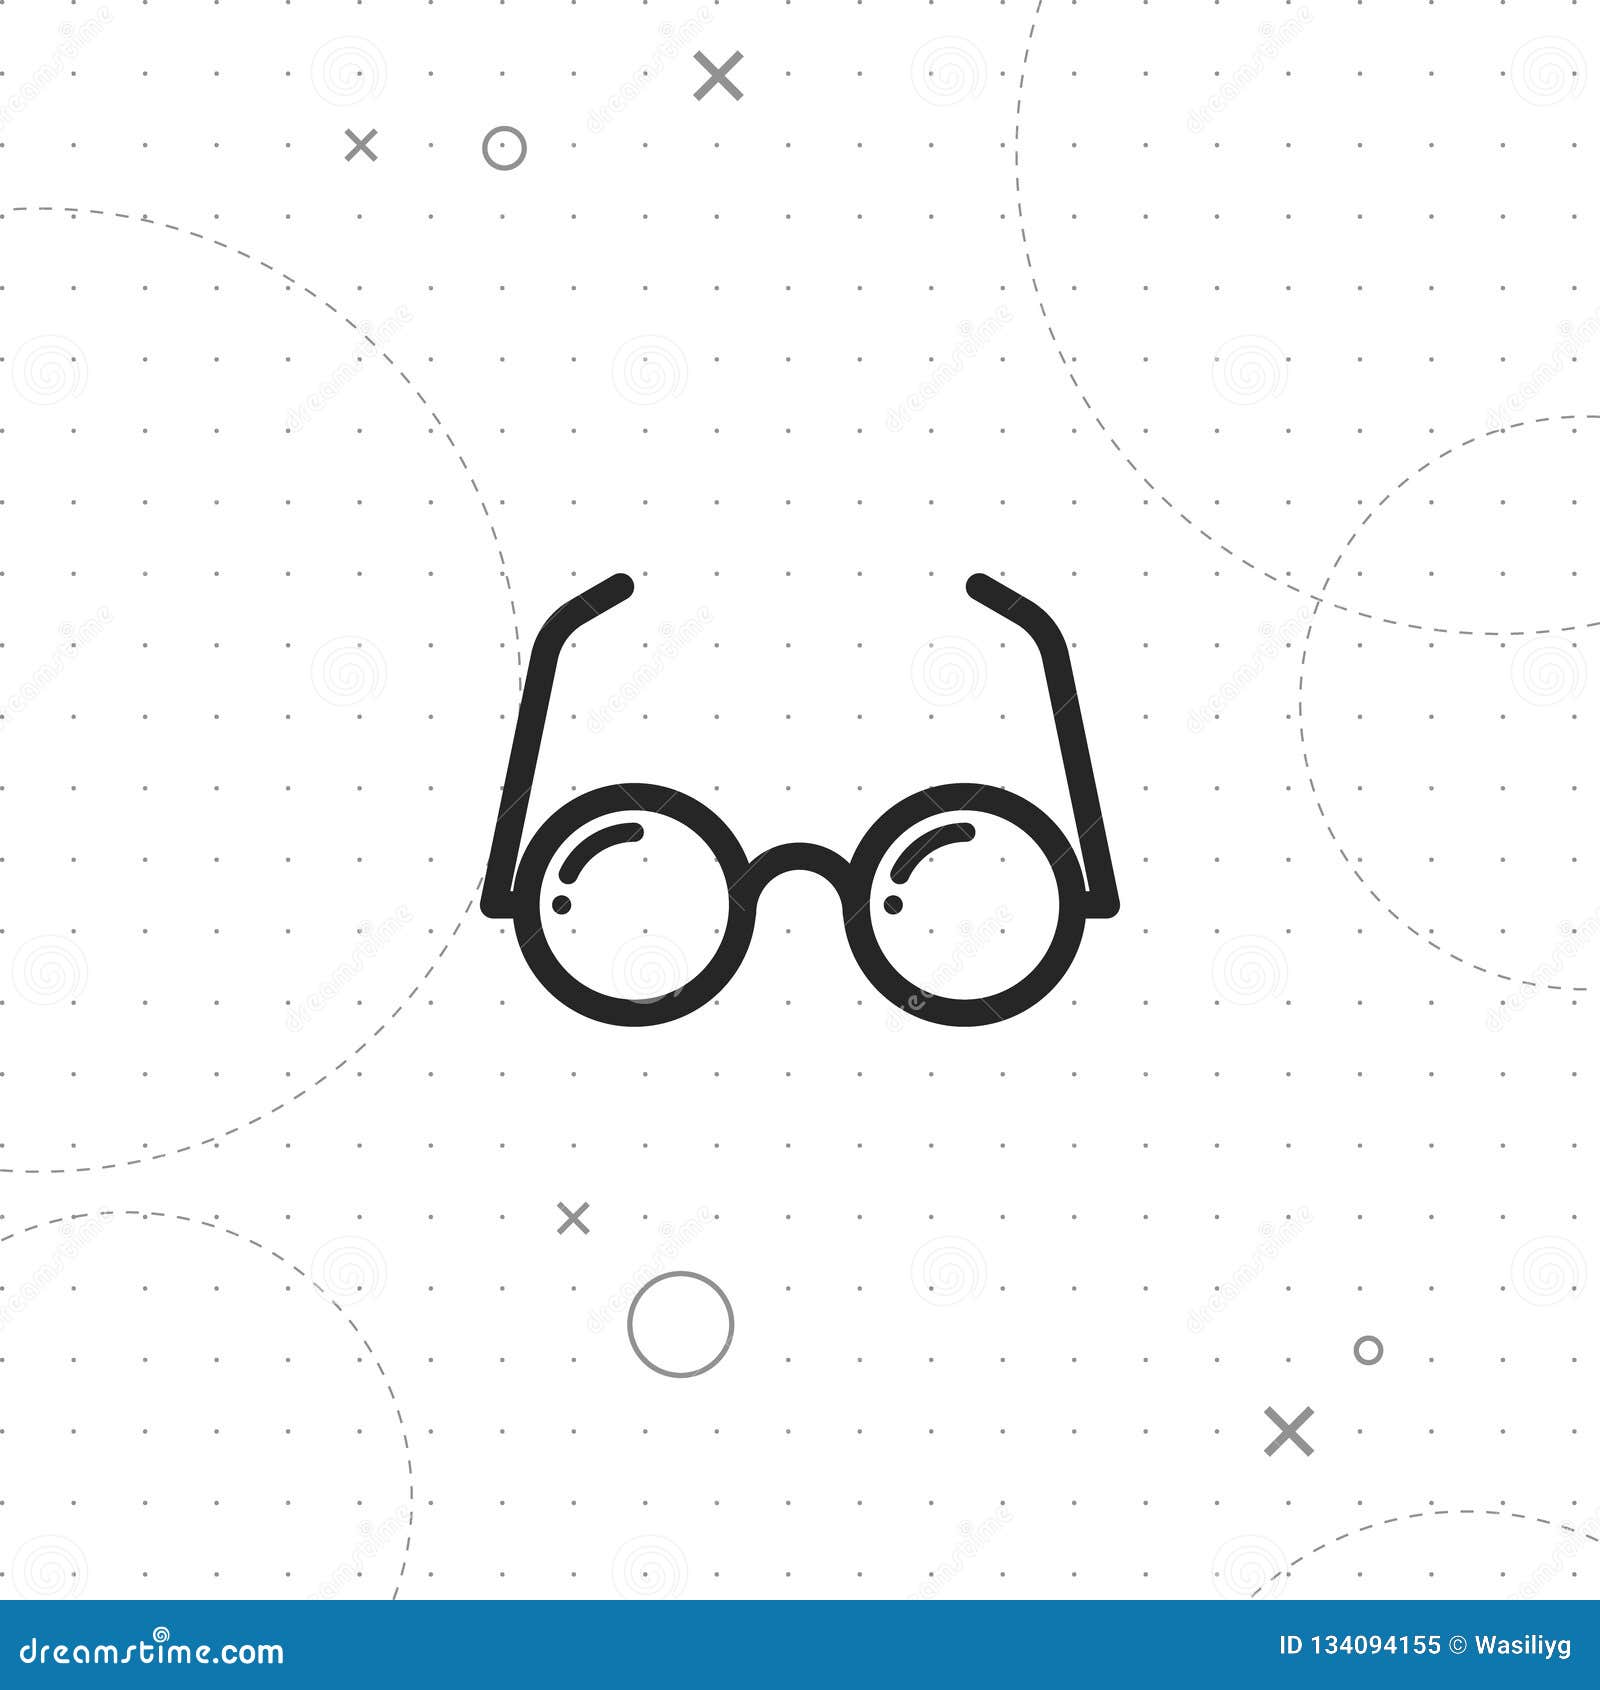 eyeglasses icon, optical icon